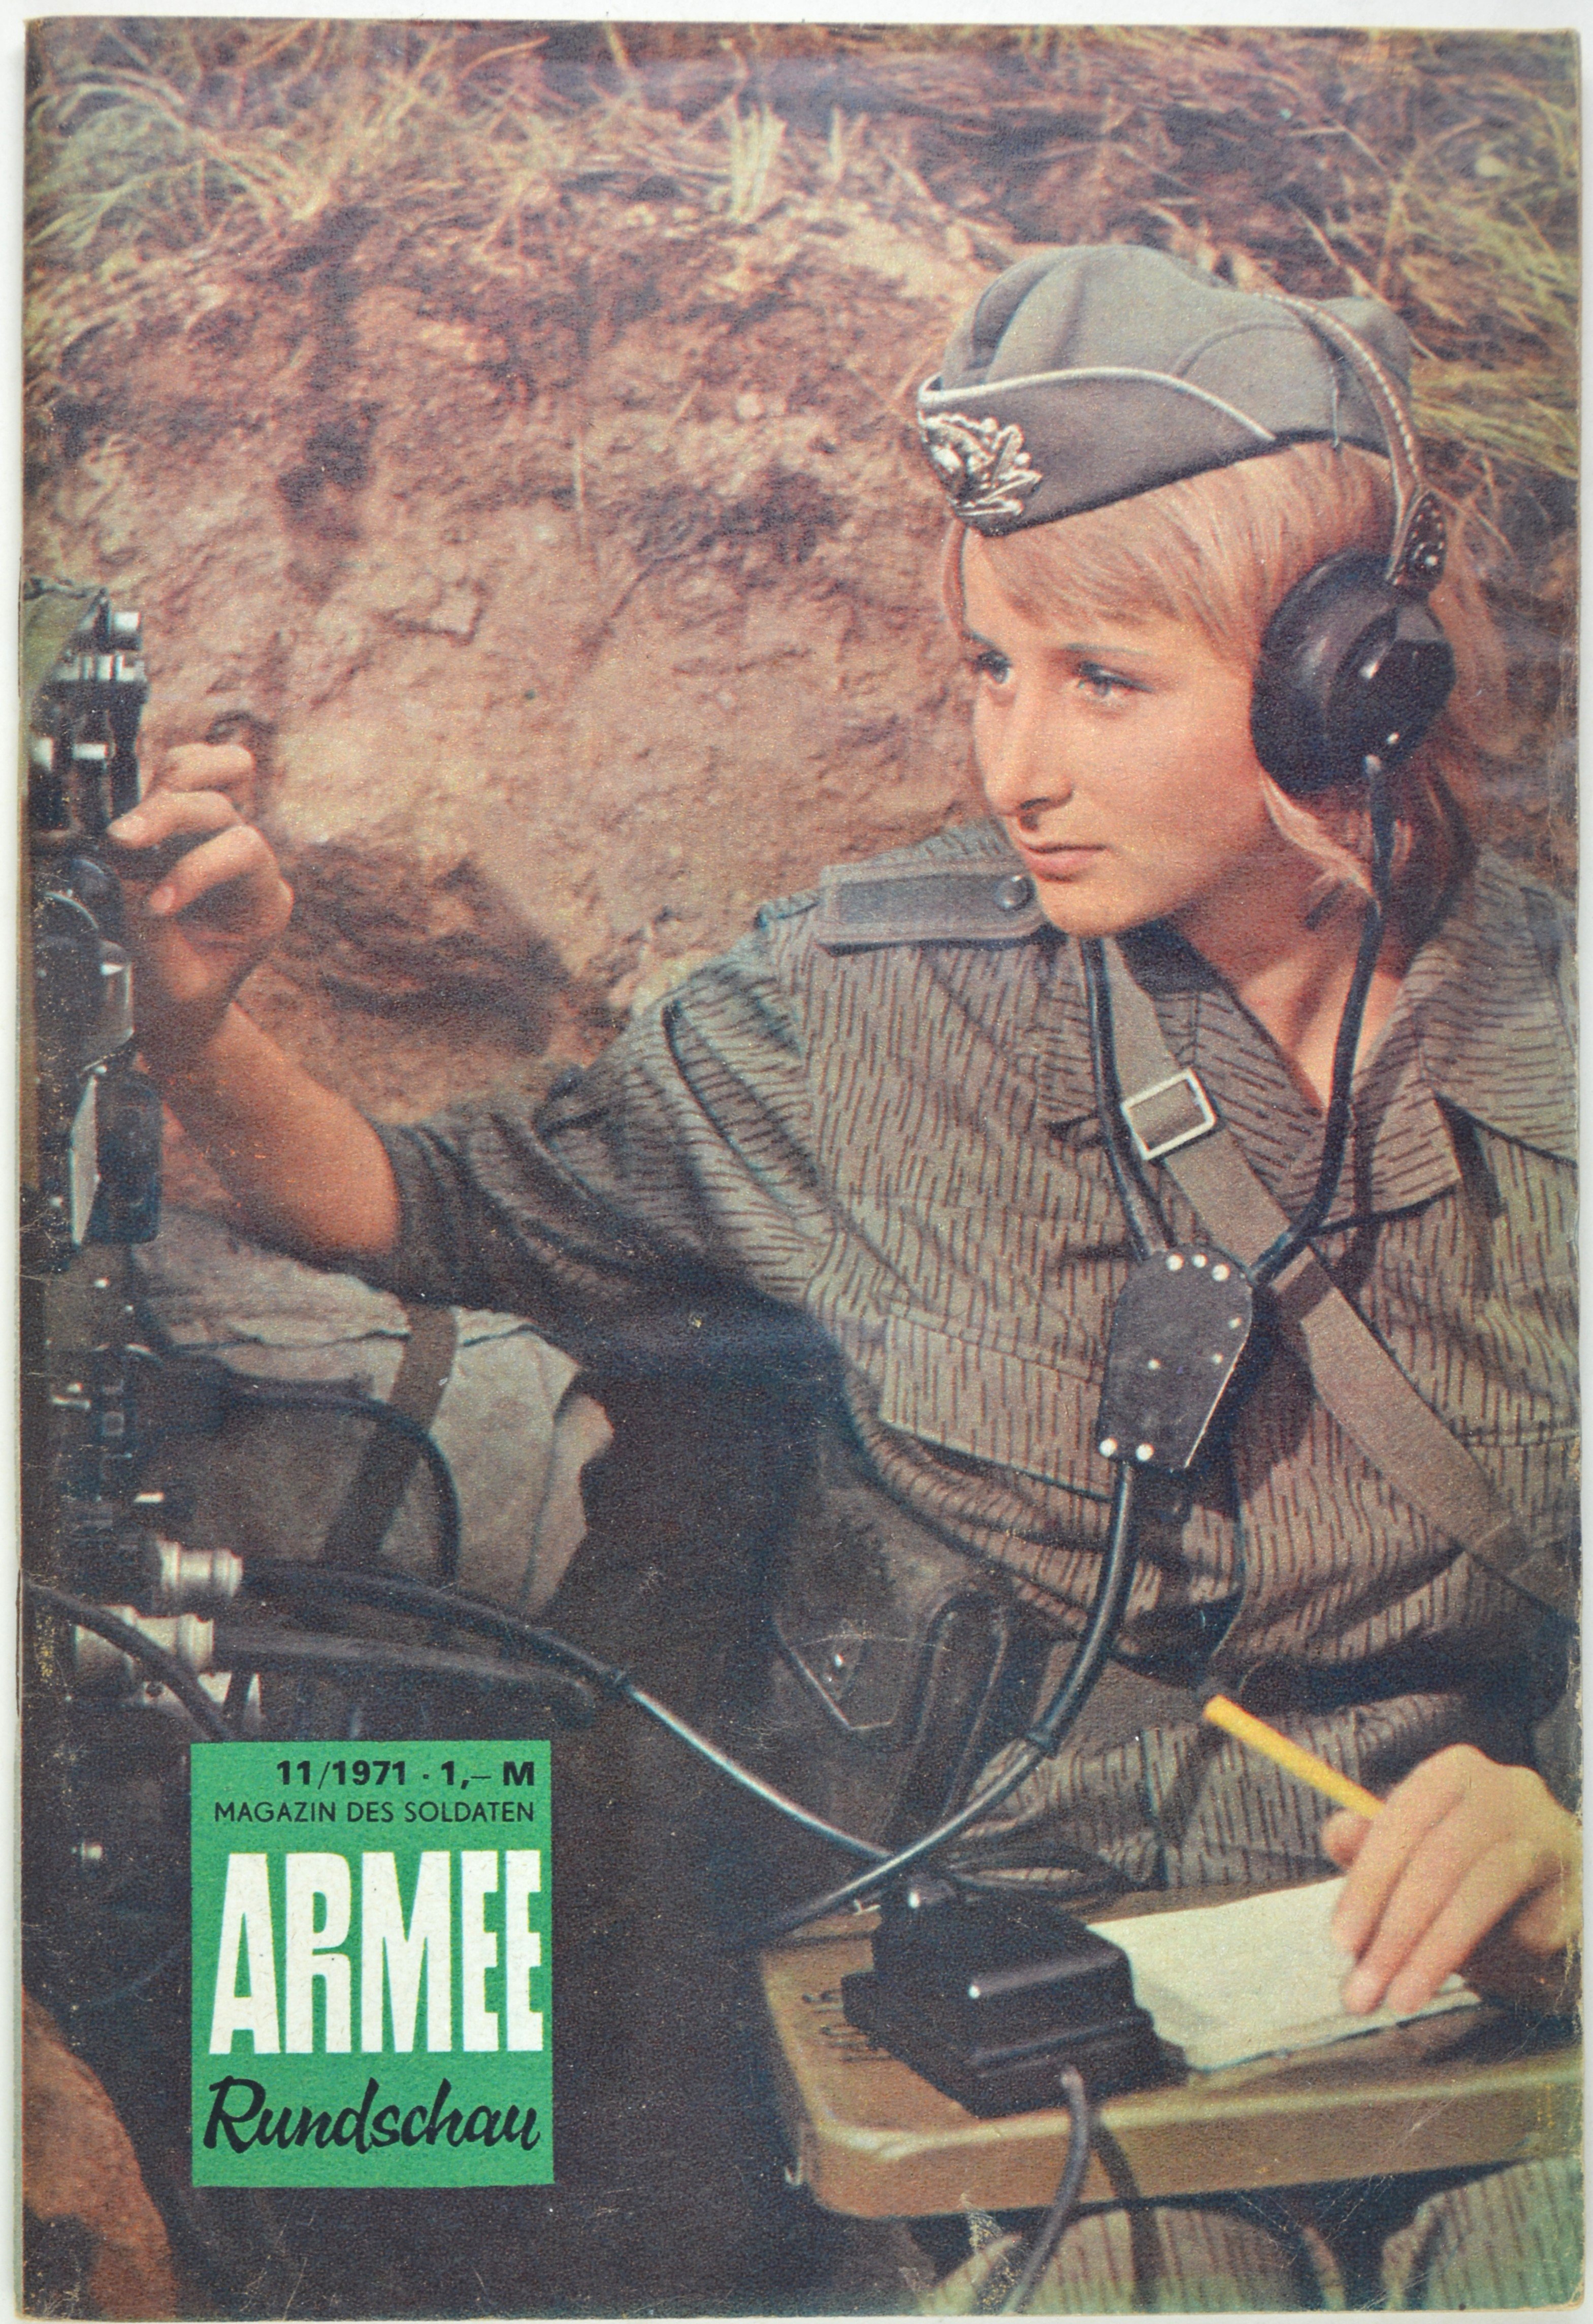 Armeerundschau - Magazin des Soldaten (1971), Heft 11 (DDR Geschichtsmuseum im Dokumentationszentrum Perleberg CC BY-SA)